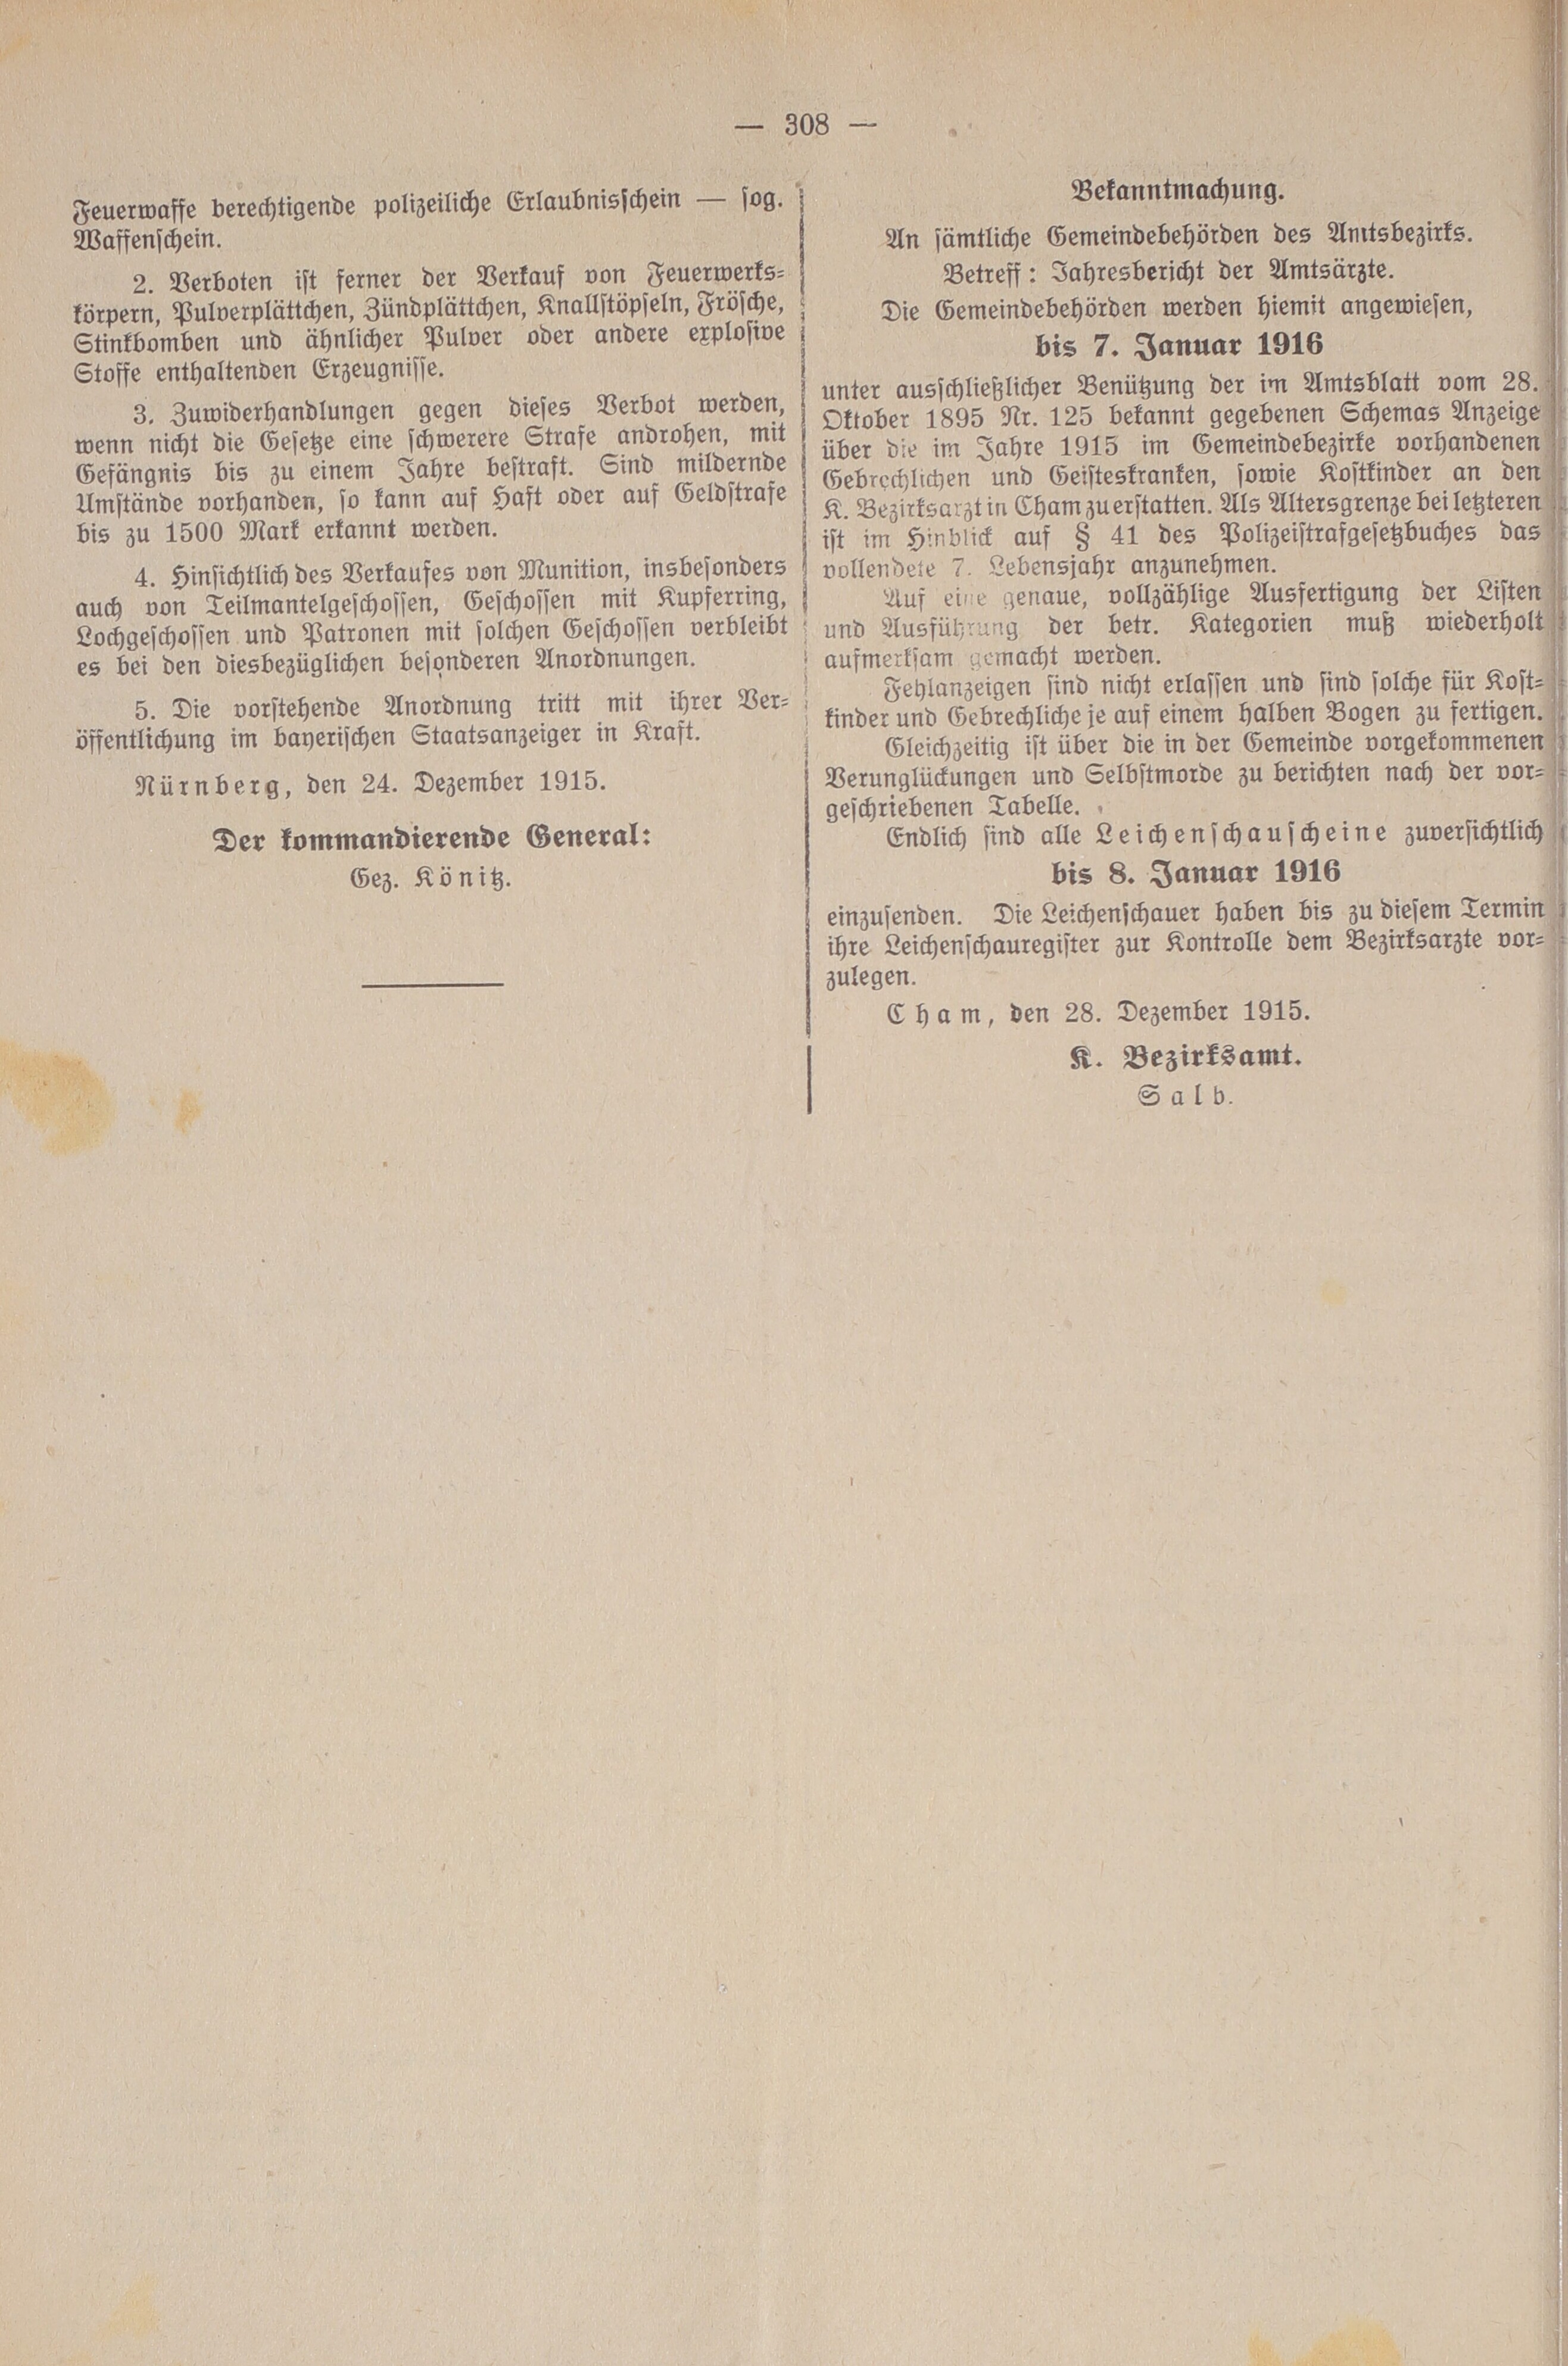 4. amtsblatt-cham-1915-12-28-n83_3010